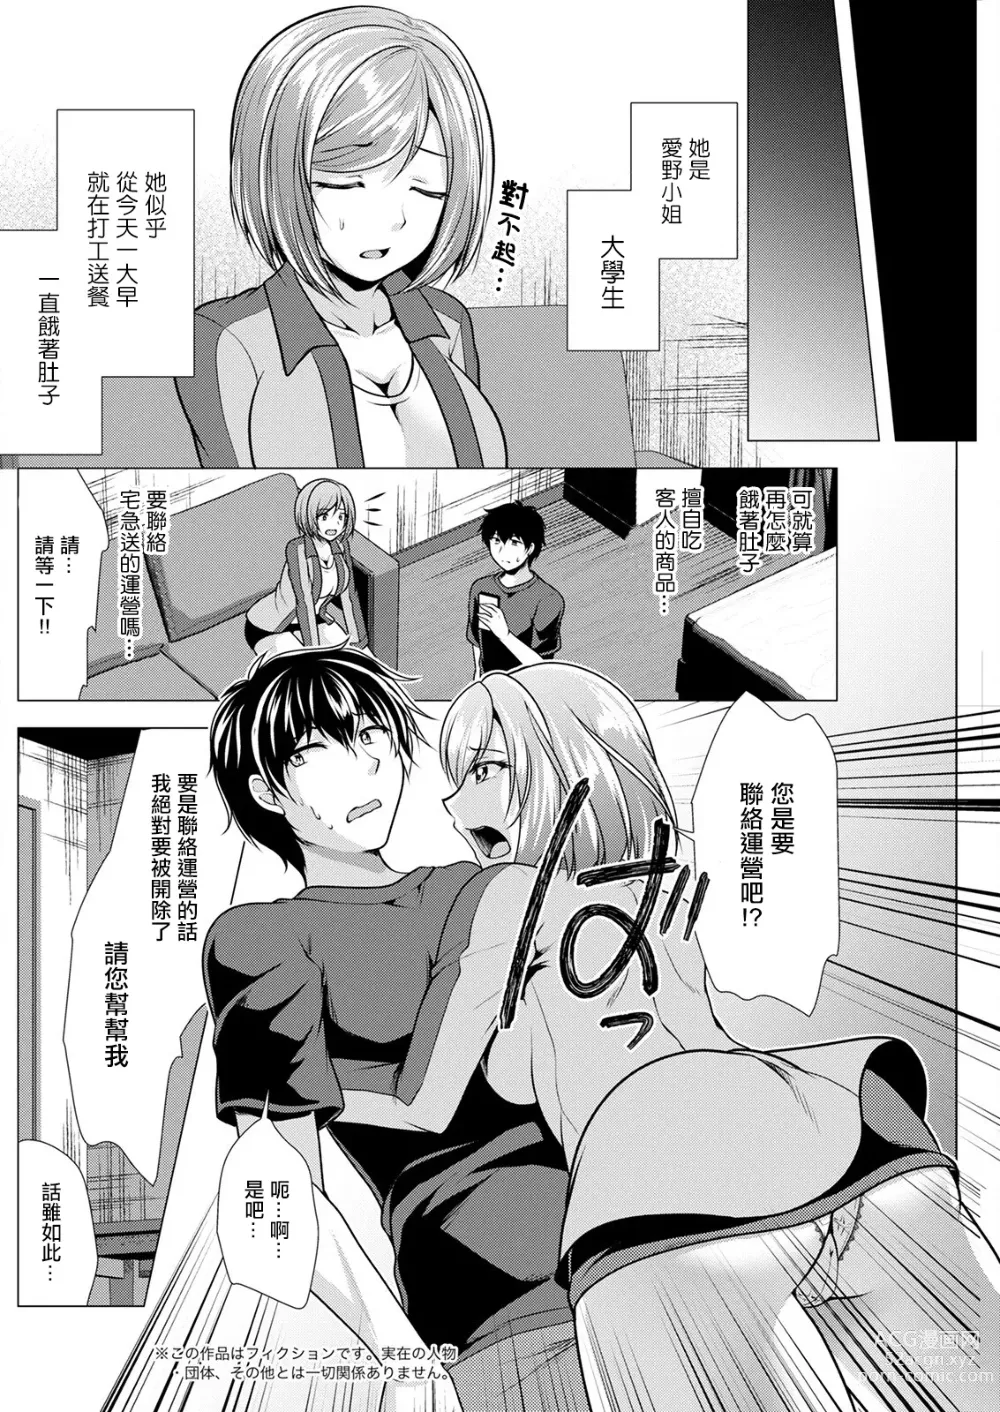 Page 2 of manga Otodoke Girl Tsumamigui